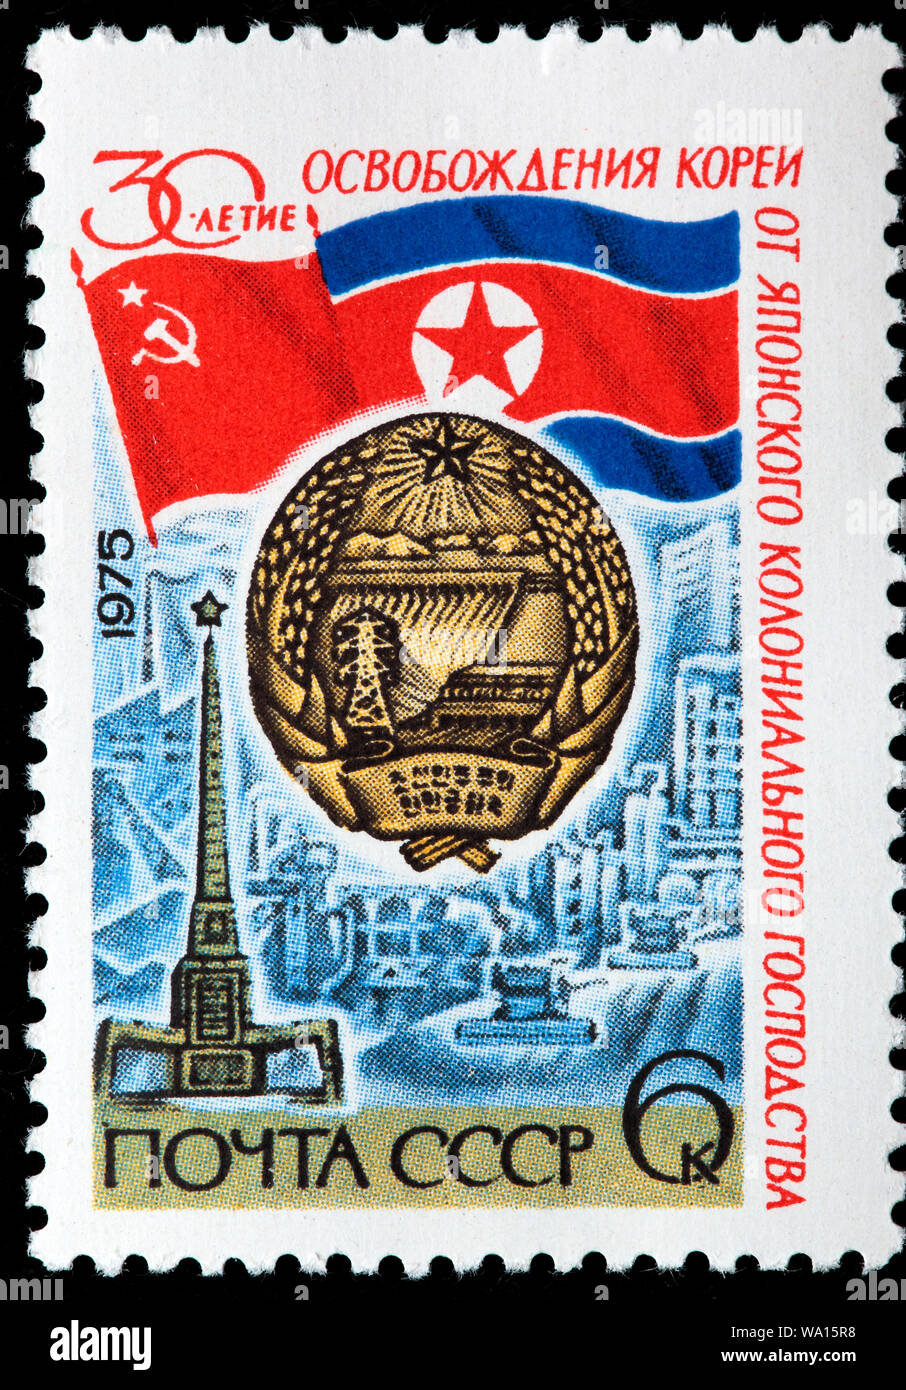 Trentesimo anniversario della liberazione della Corea, francobollo, Russia, URSS, 1975 Foto Stock